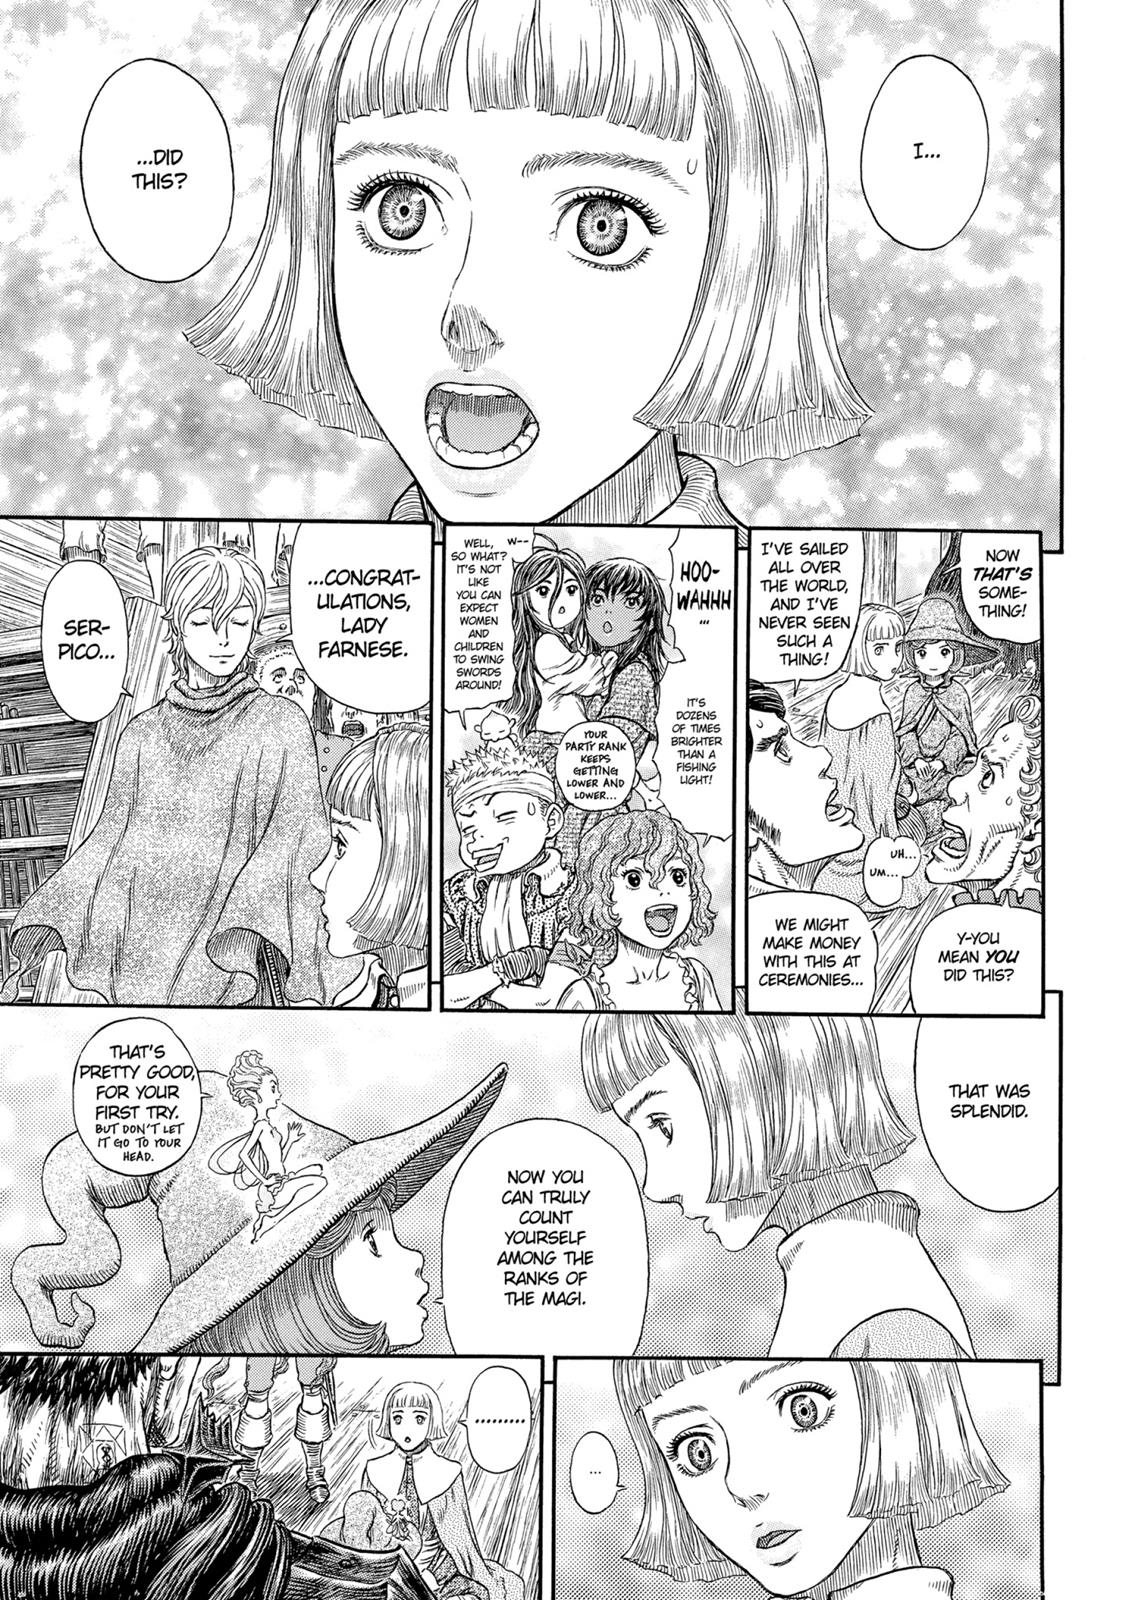 Berserk Manga Chapter 318 image 06